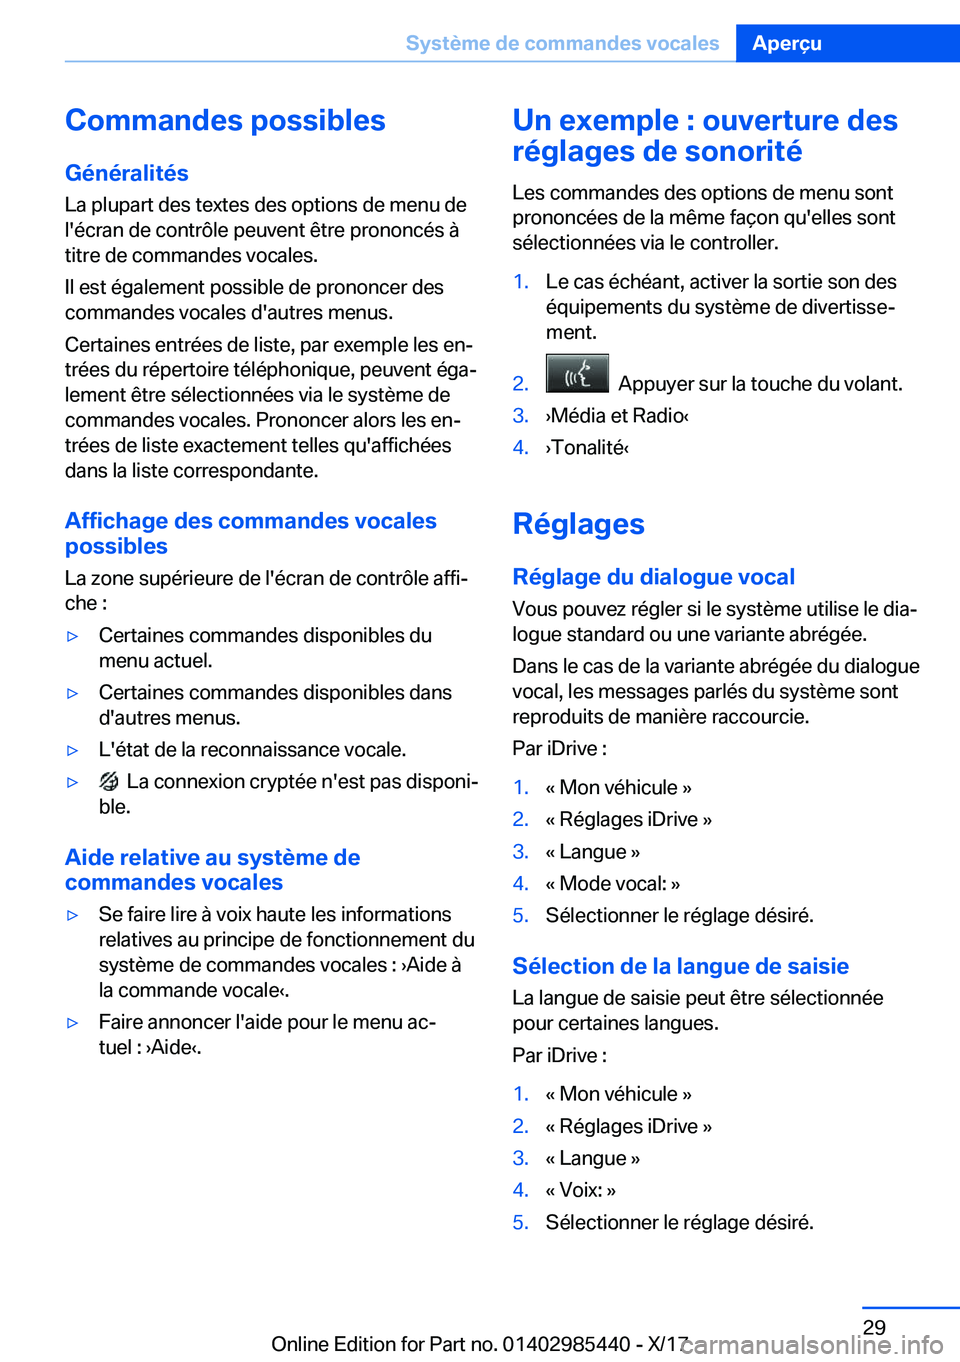 BMW X1 2018  Notices Demploi (in French) �C�o�m�m�a�n�d�e�s��p�o�s�s�i�b�l�e�s�G�é�n�é�r�a�l�i�t�é�s
�L�a� �p�l�u�p�a�r�t� �d�e�s� �t�e�x�t�e�s� �d�e�s� �o�p�t�i�o�n�s� �d�e� �m�e�n�u� �d�e �l�'�é�c�r�a�n� �d�e� �c�o�n�t�r�